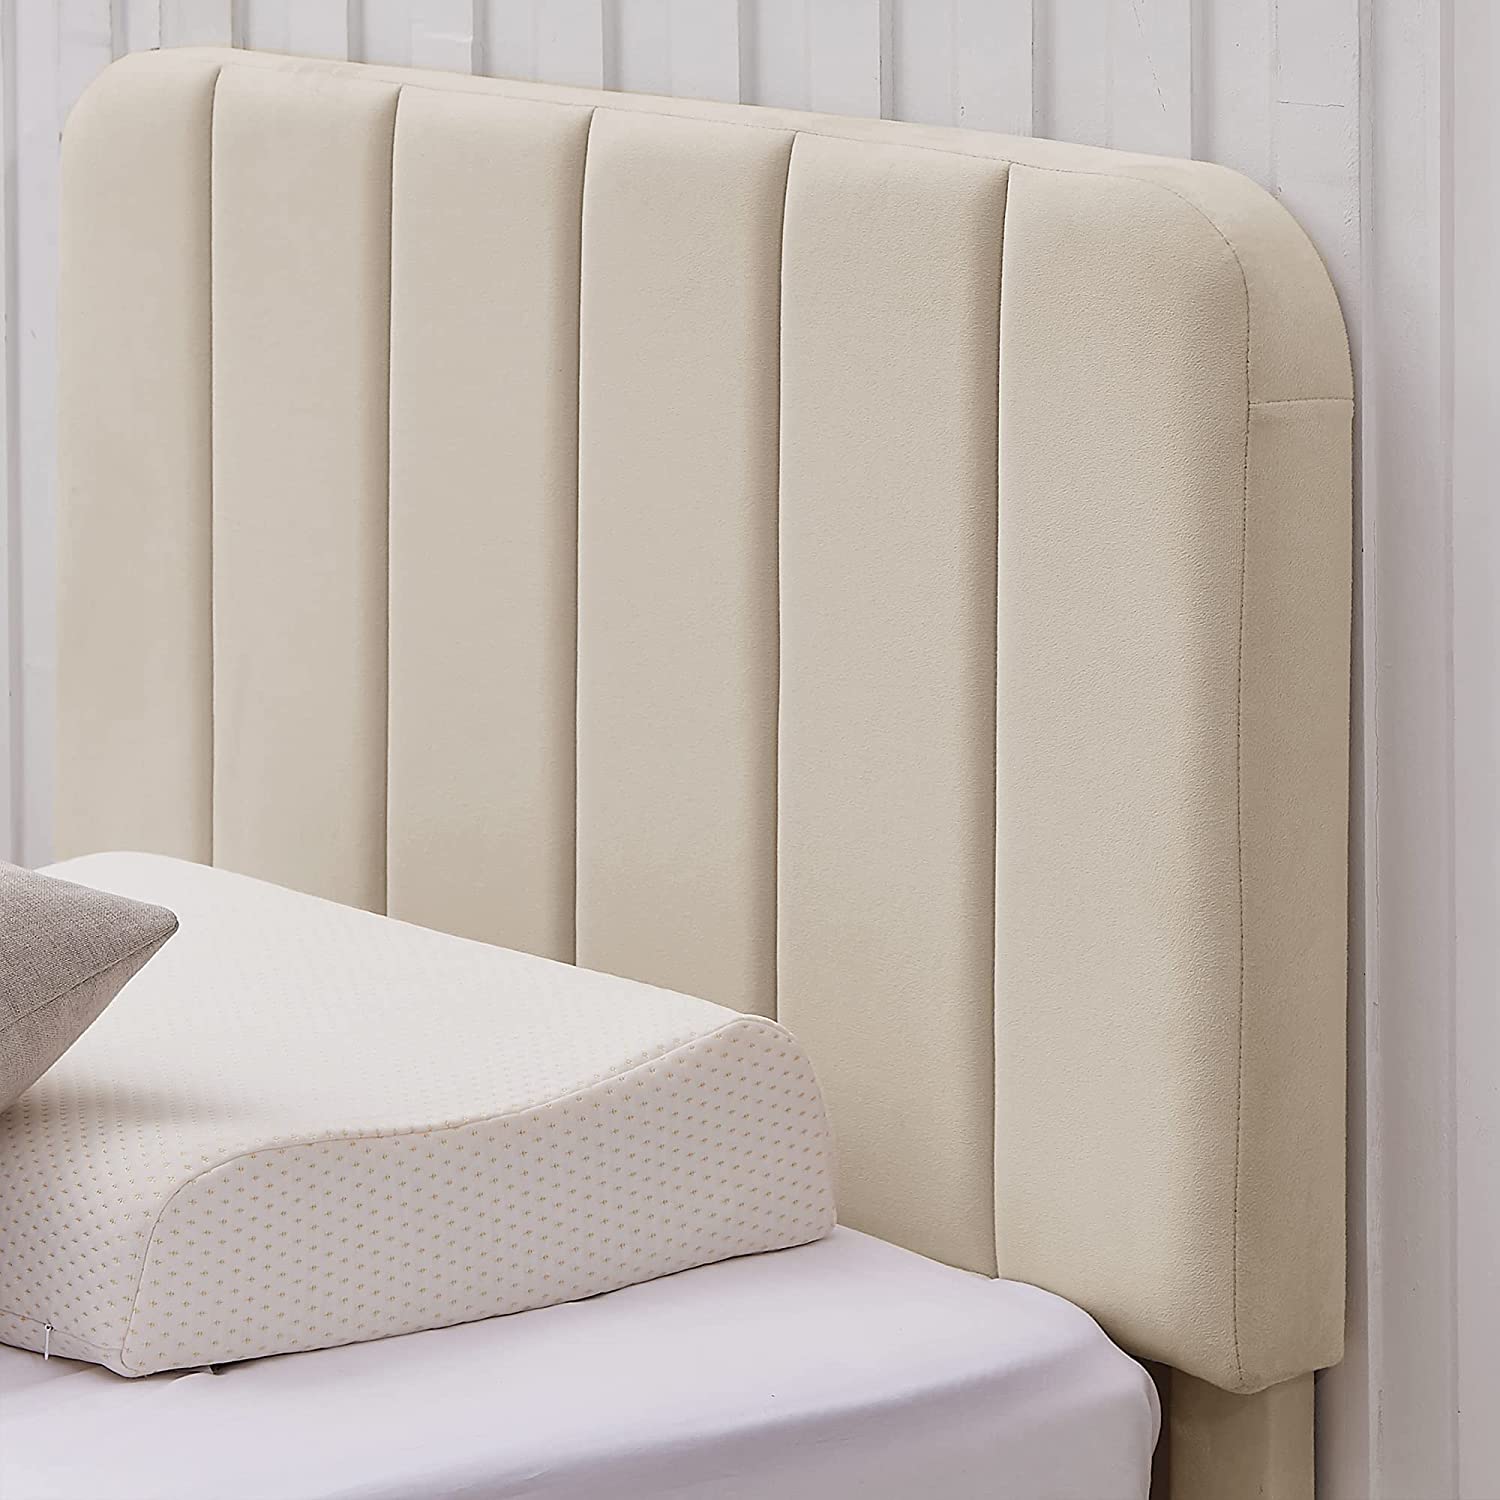 VECELO Bed Frame, Upholstered Platform bedframe with Adjustable Headboard, No Box Spring Needed